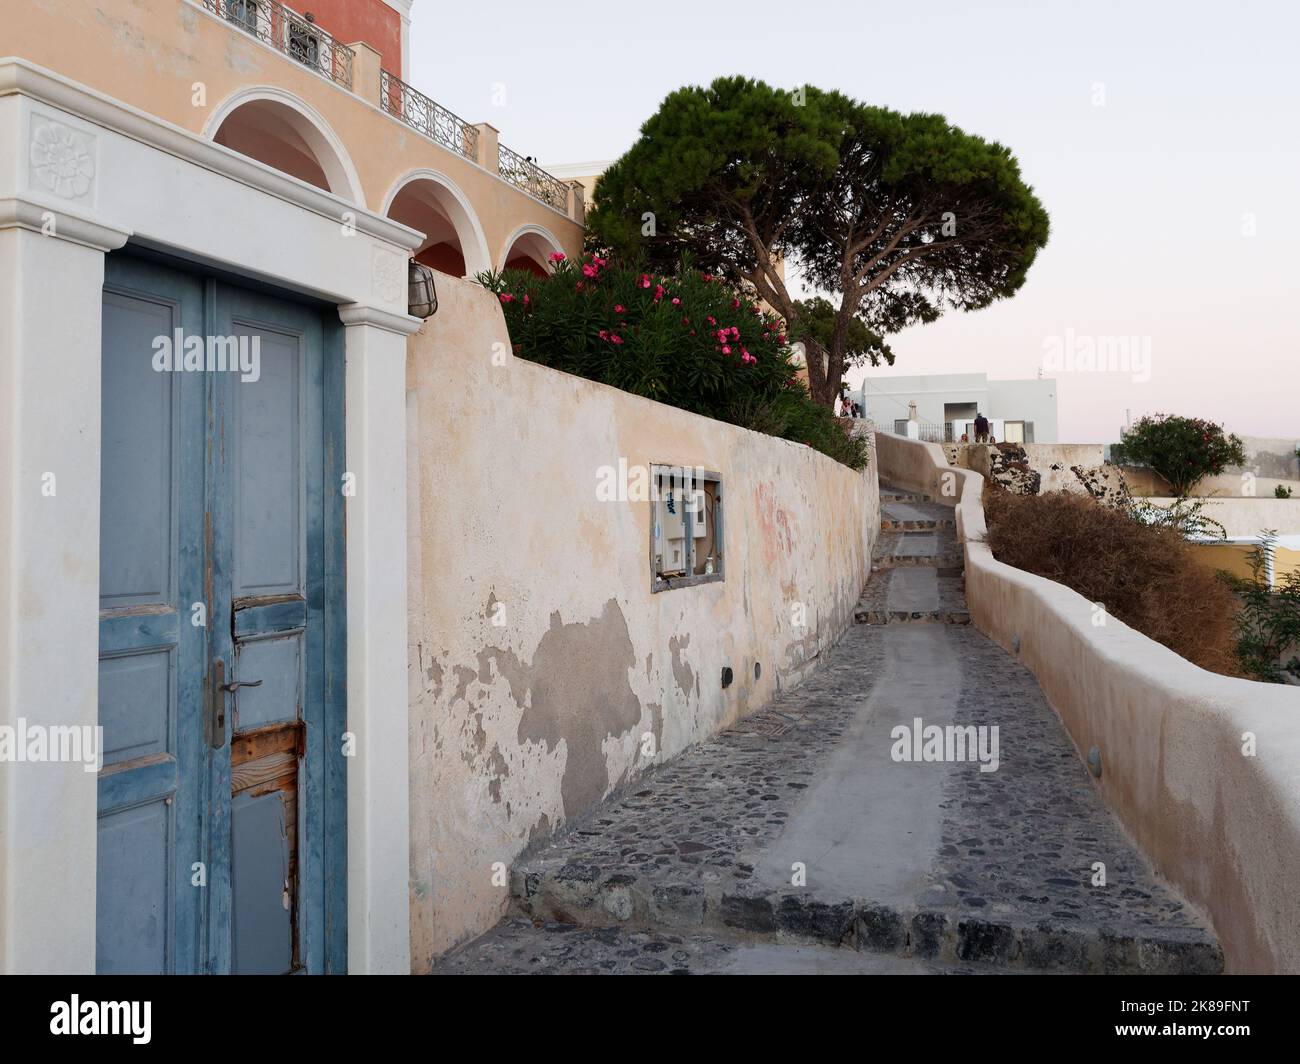 Chemin côtier à Fira avec porte en ruine sur la gauche. Île grecque des Cyclades de Santorin dans la mer Égée Banque D'Images